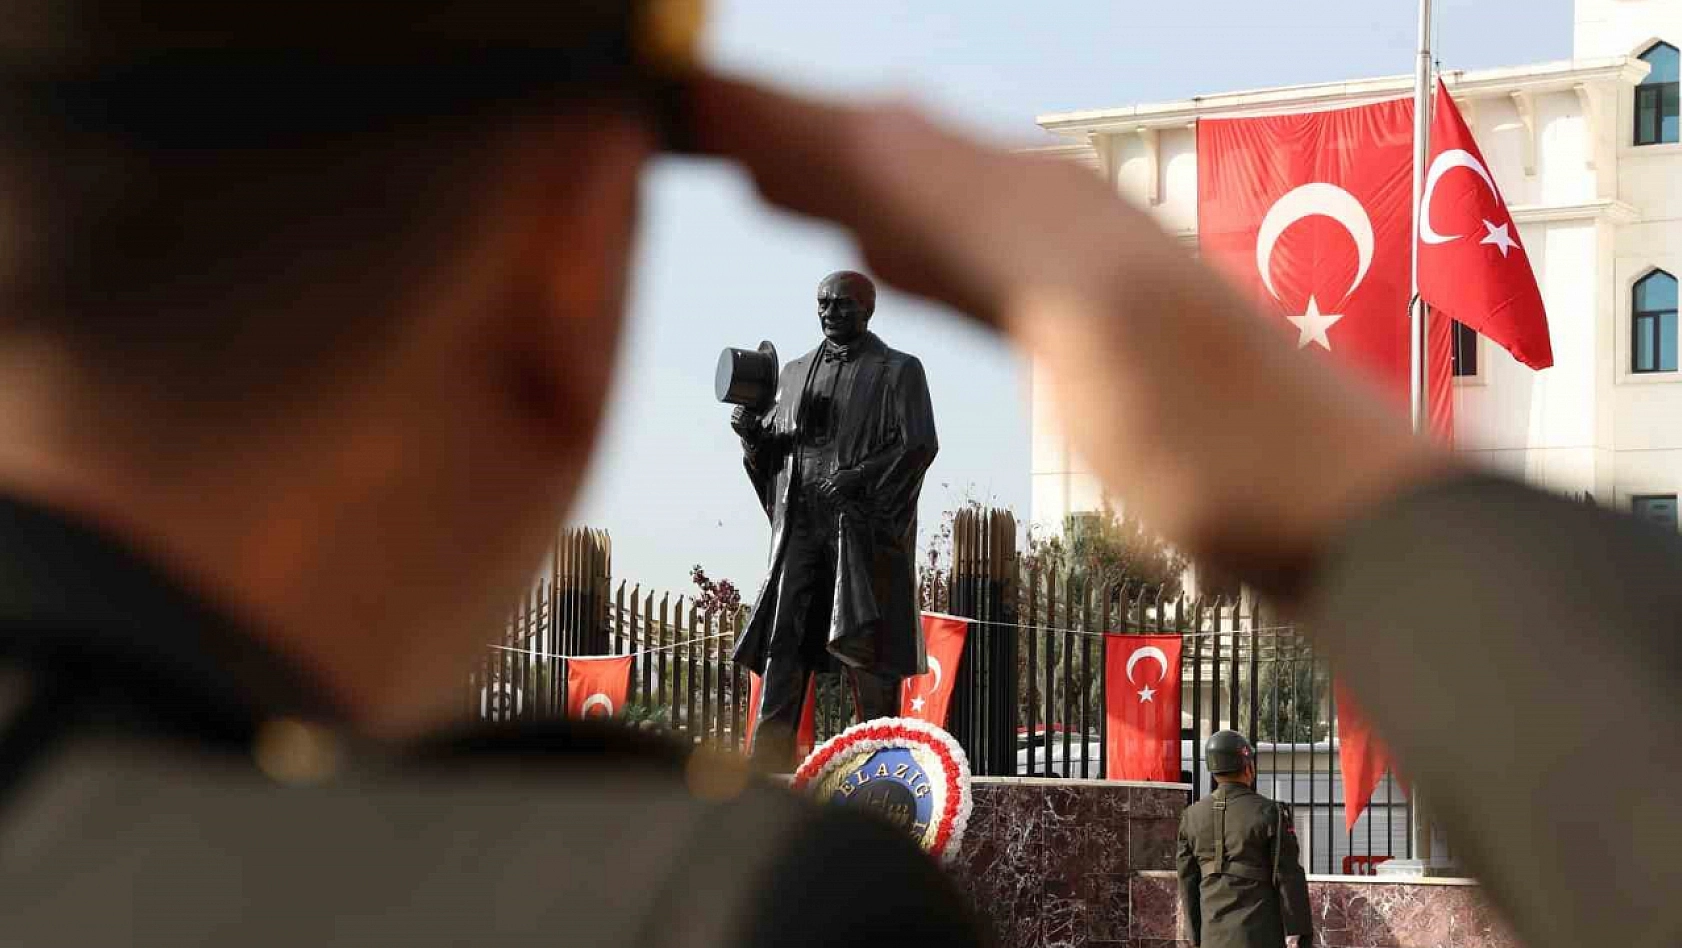 Elazığ'da Atatürk düzenlenen törenle anıldı